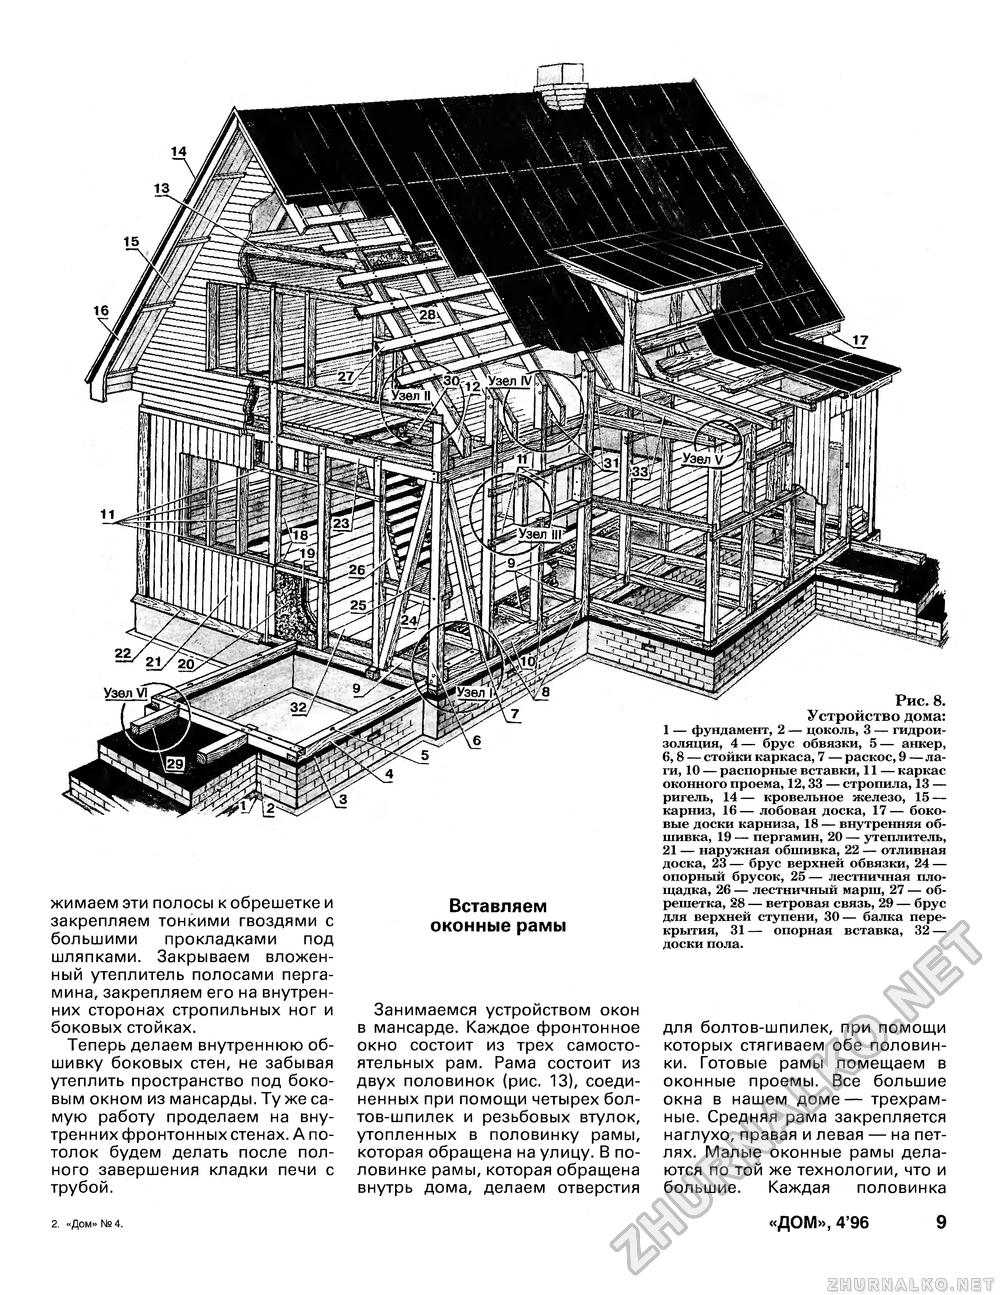 Дом 1996-04, страница 11